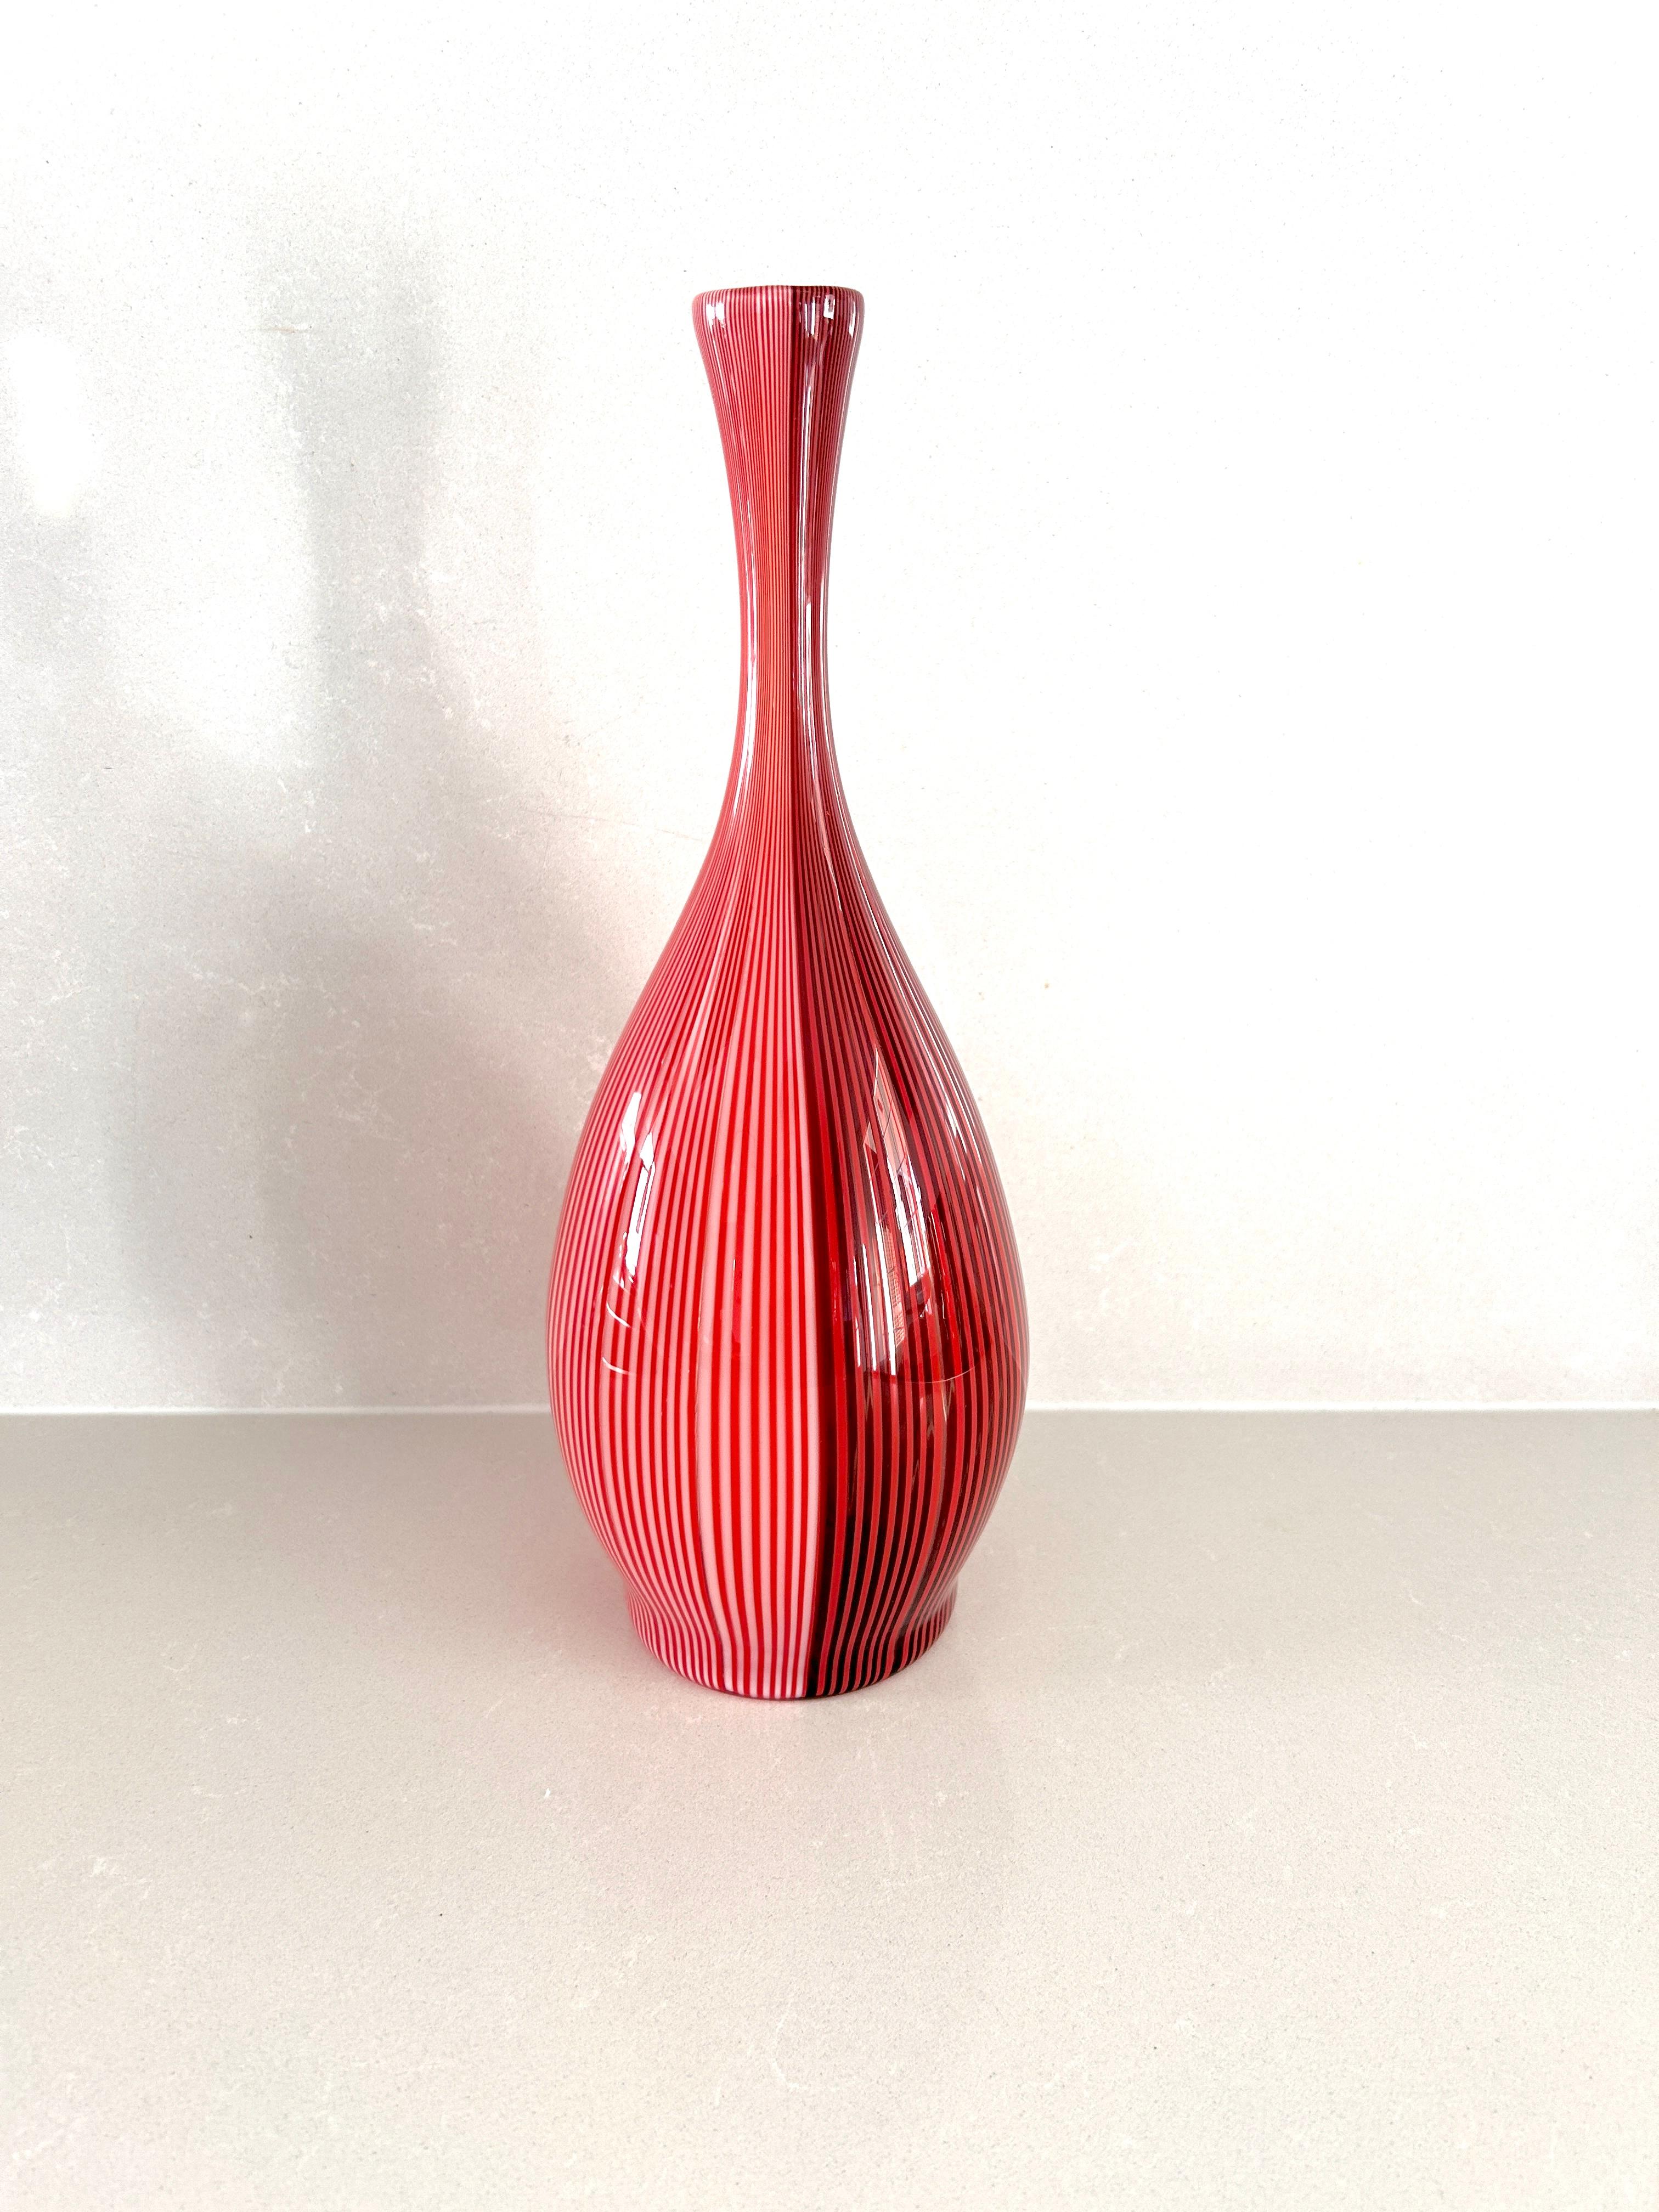 Eine schöne und seltene flaschenförmige Vase aus der Serie 'shiny fabric' in der Farbe antikrot aus dem künstlerischen Schaffen von Carlo Scarpa. Vase aus mundgeblasenem Glas, gearbeitet mit zweifarbigen, filigranen Bändern: ein Stoff, der gefaltet